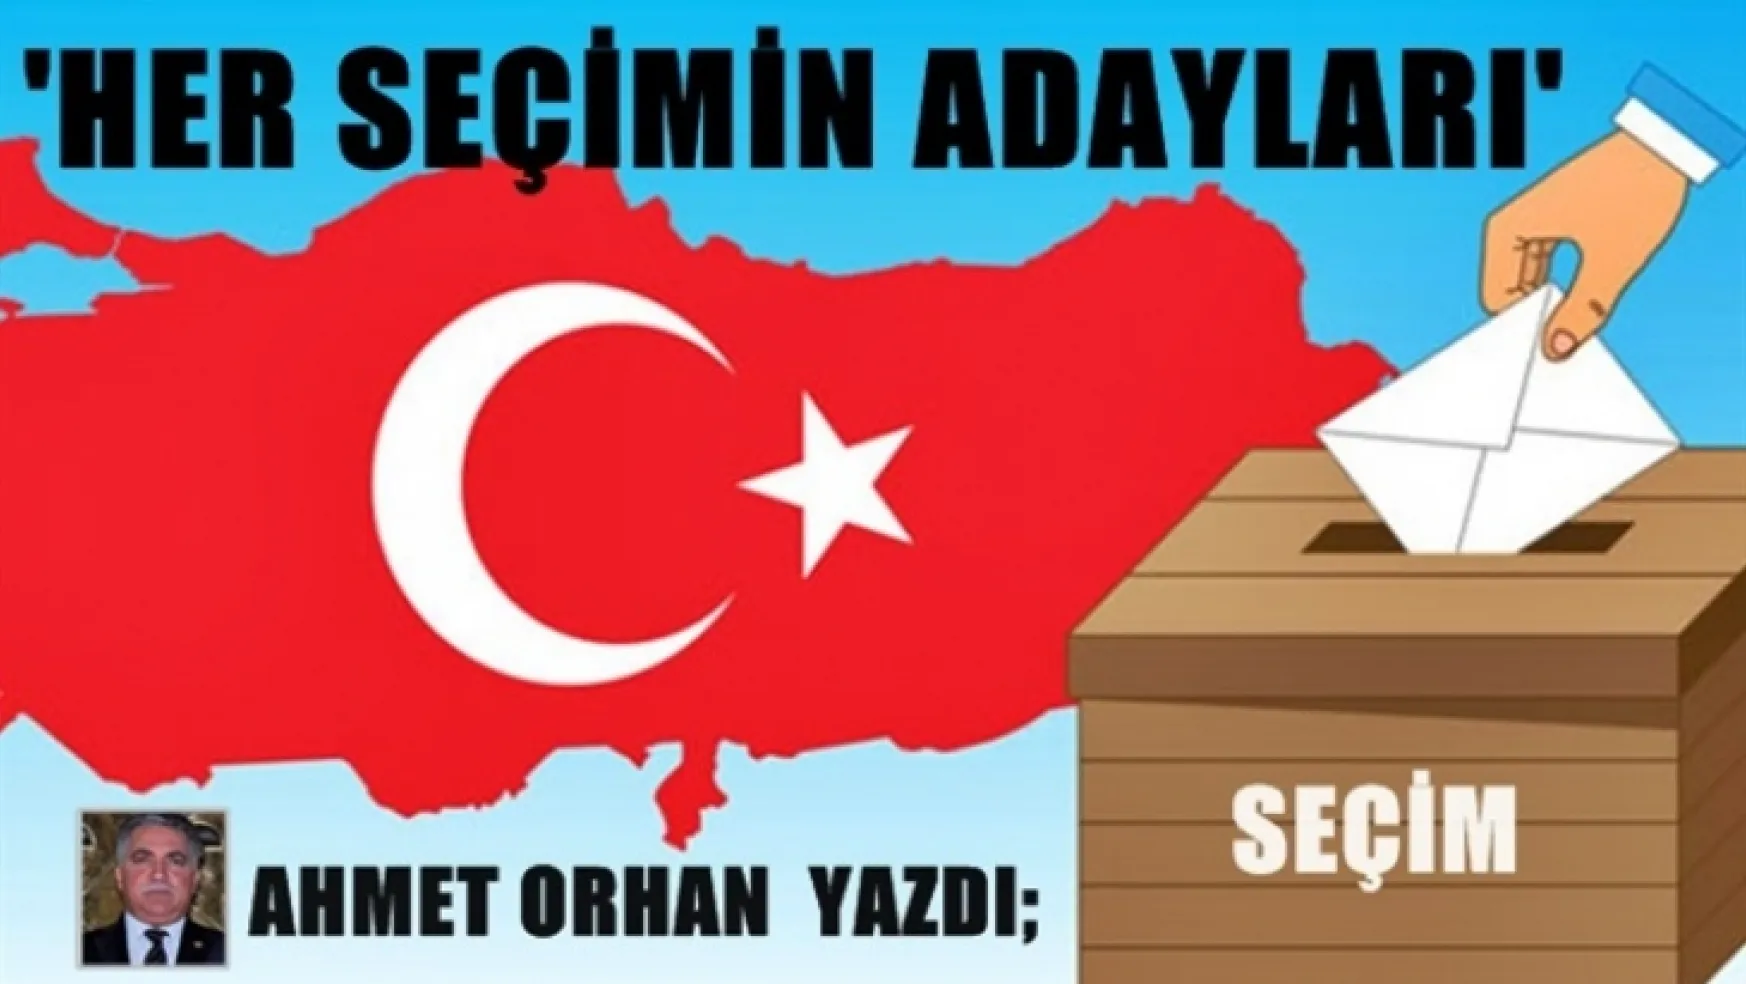 Ahmet ORHAN Yazdı 'HER SEÇİMİN ADAYLARI'